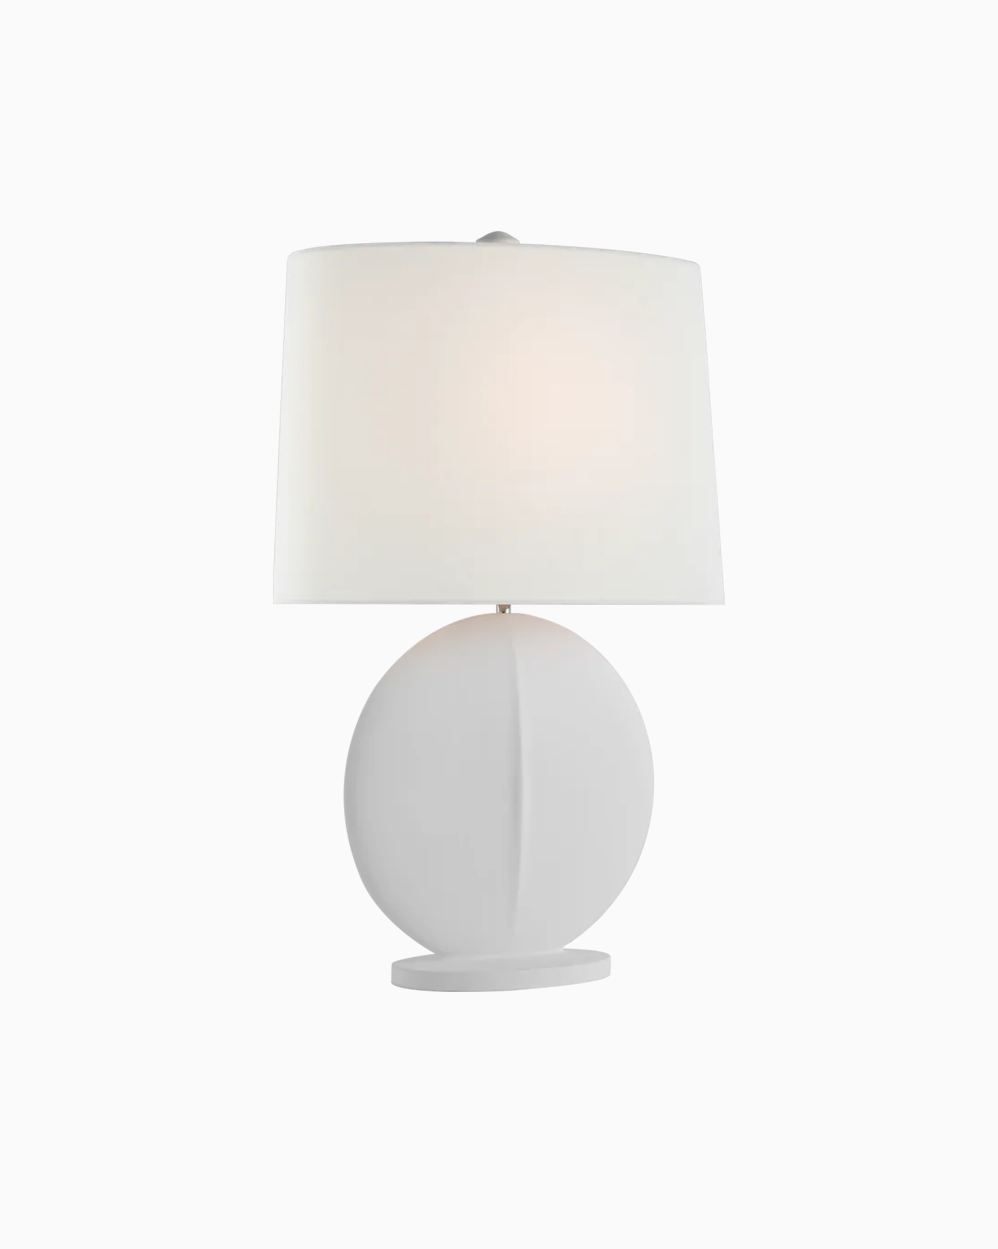 Mariza Medium Table Lamp